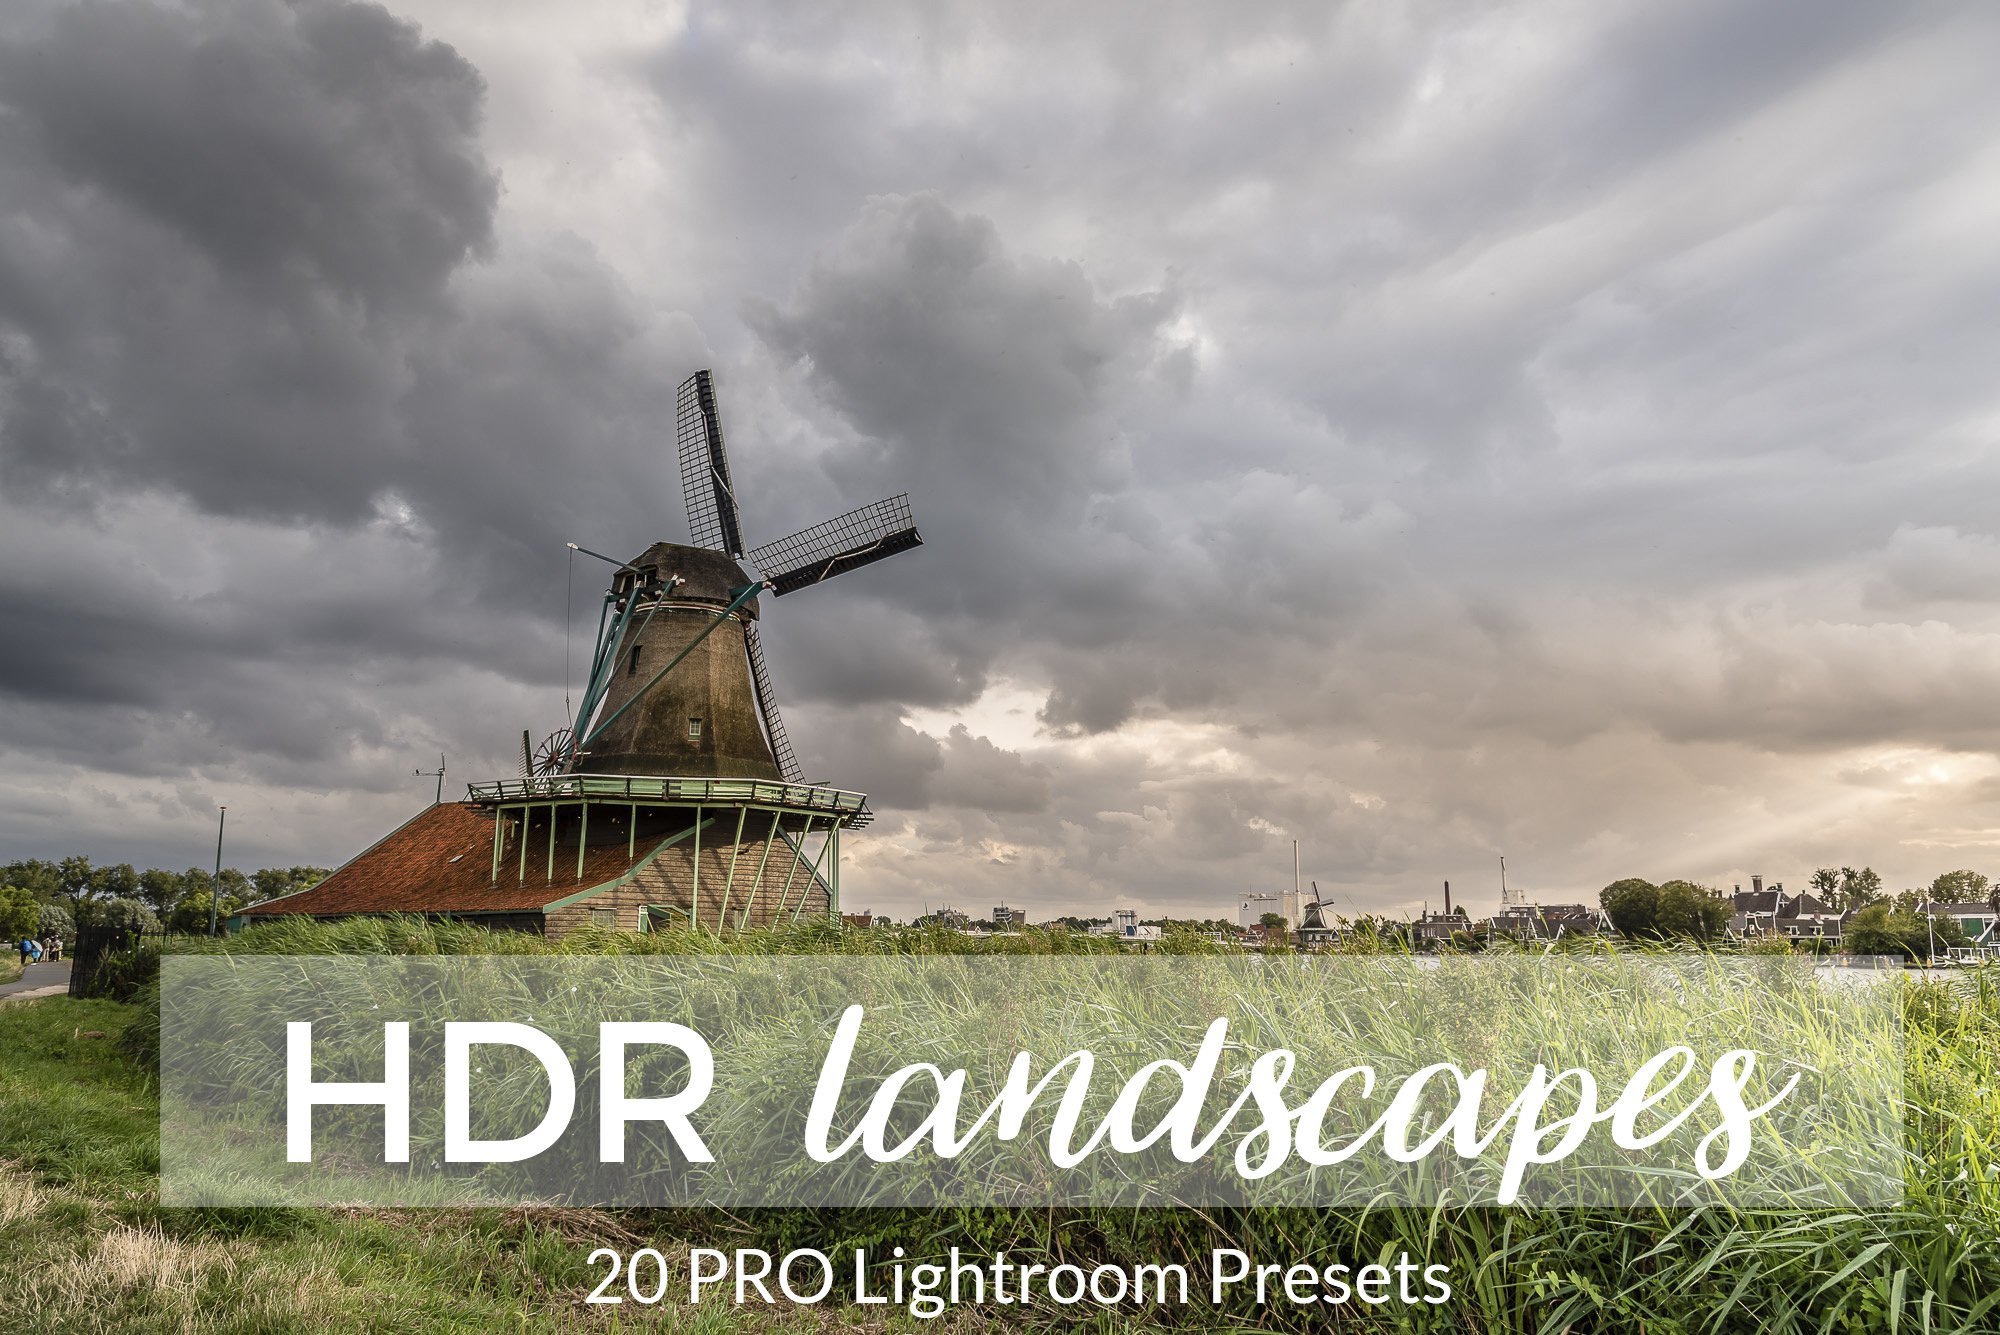 Landscape HDR Lightroom Presetscover image.